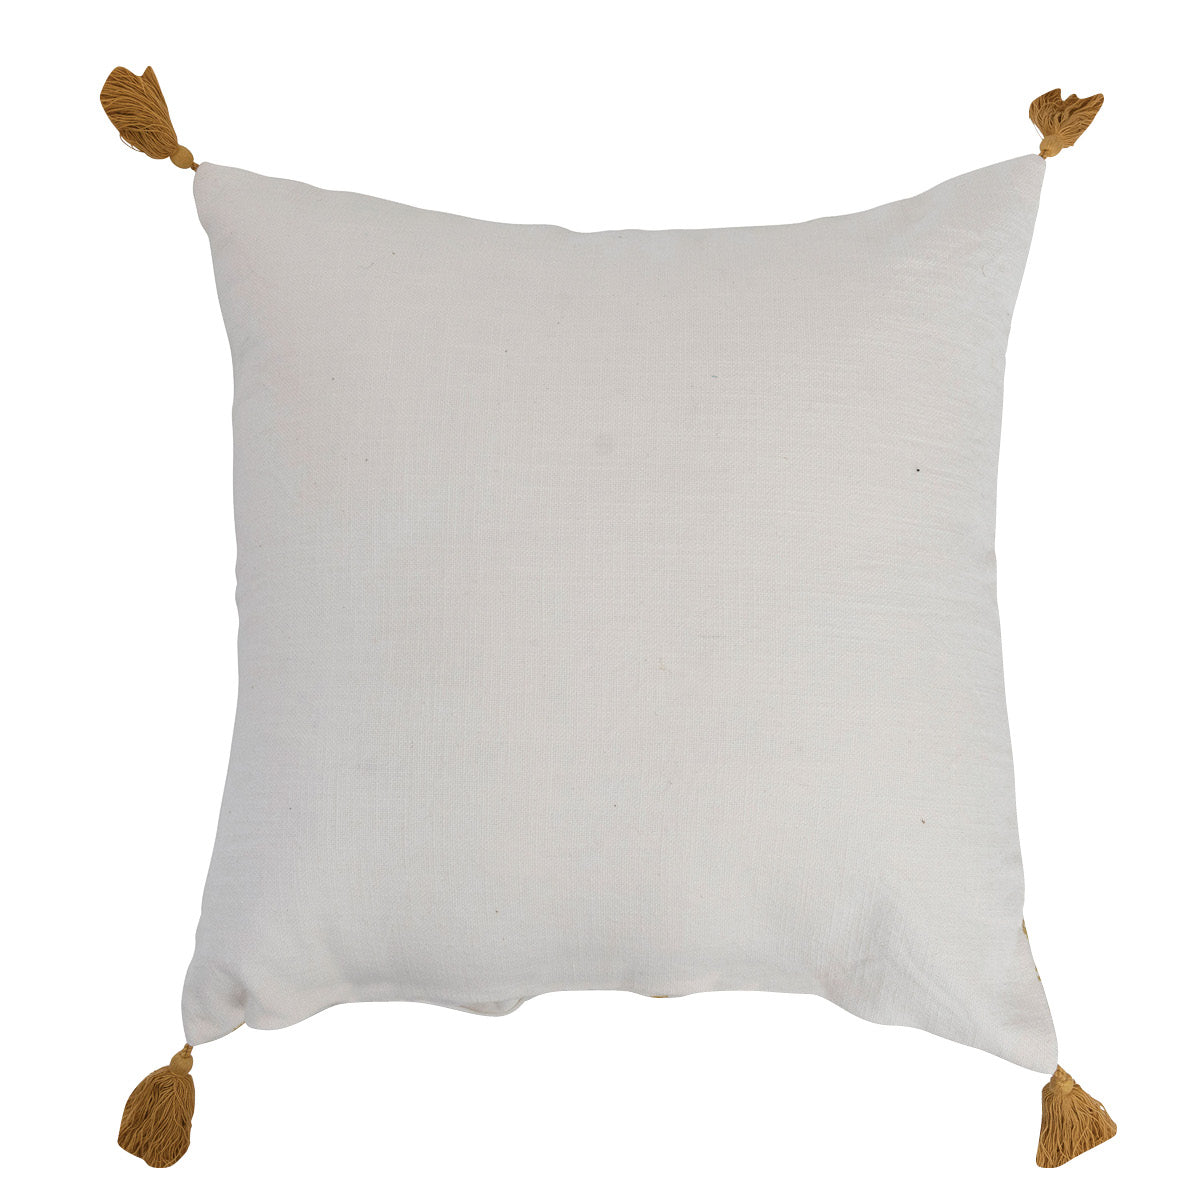 Cornflower Sage Pillow with Tassels